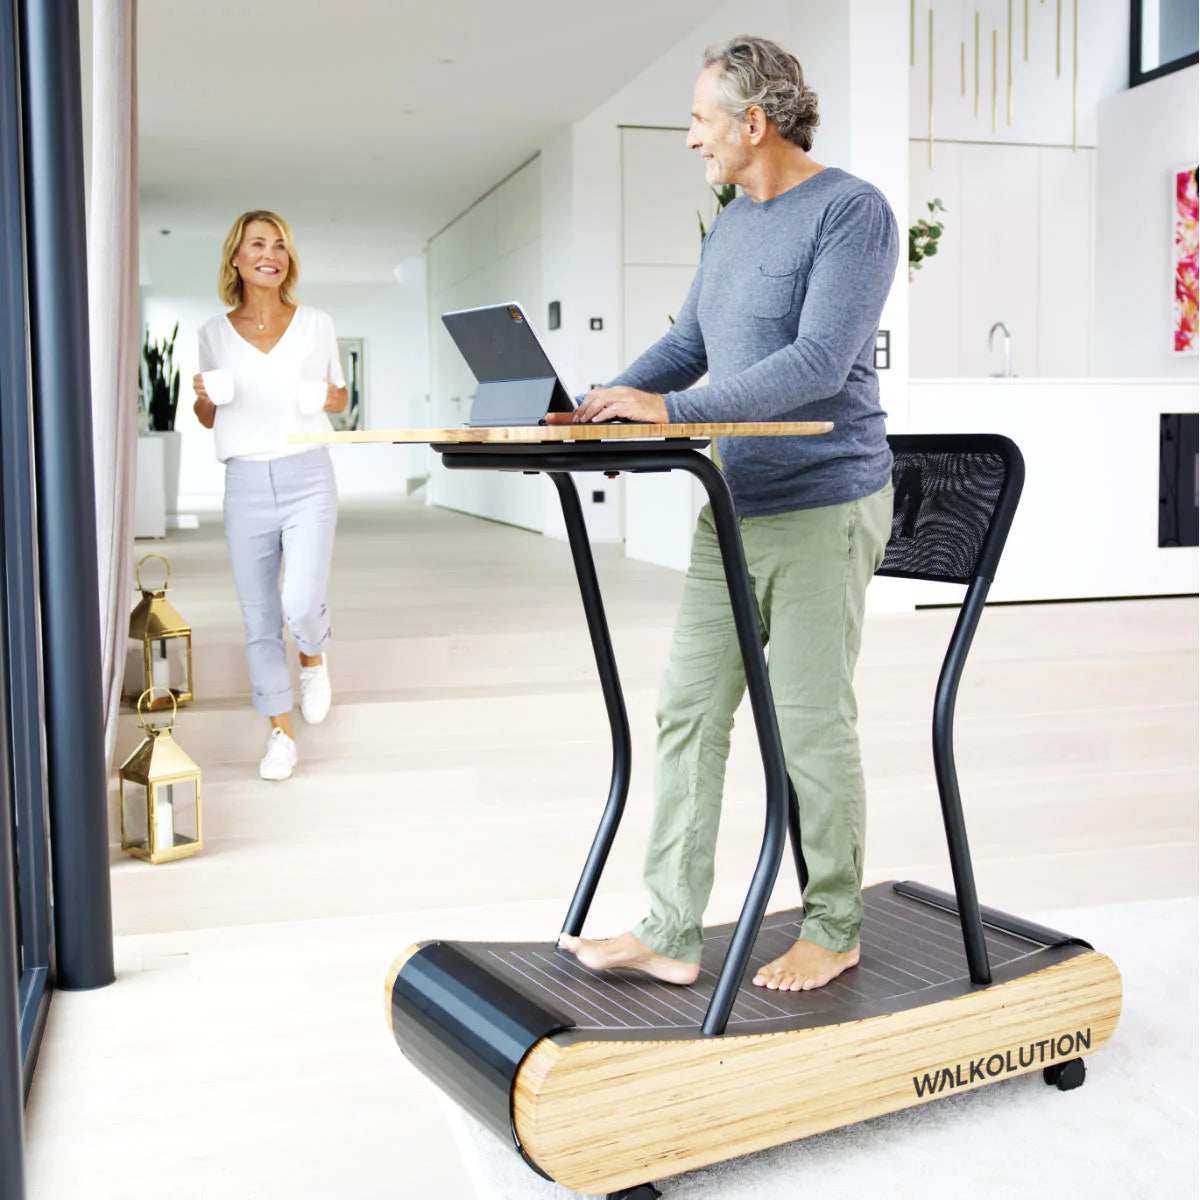 Man using treadmill desk in home office Walkolution USA